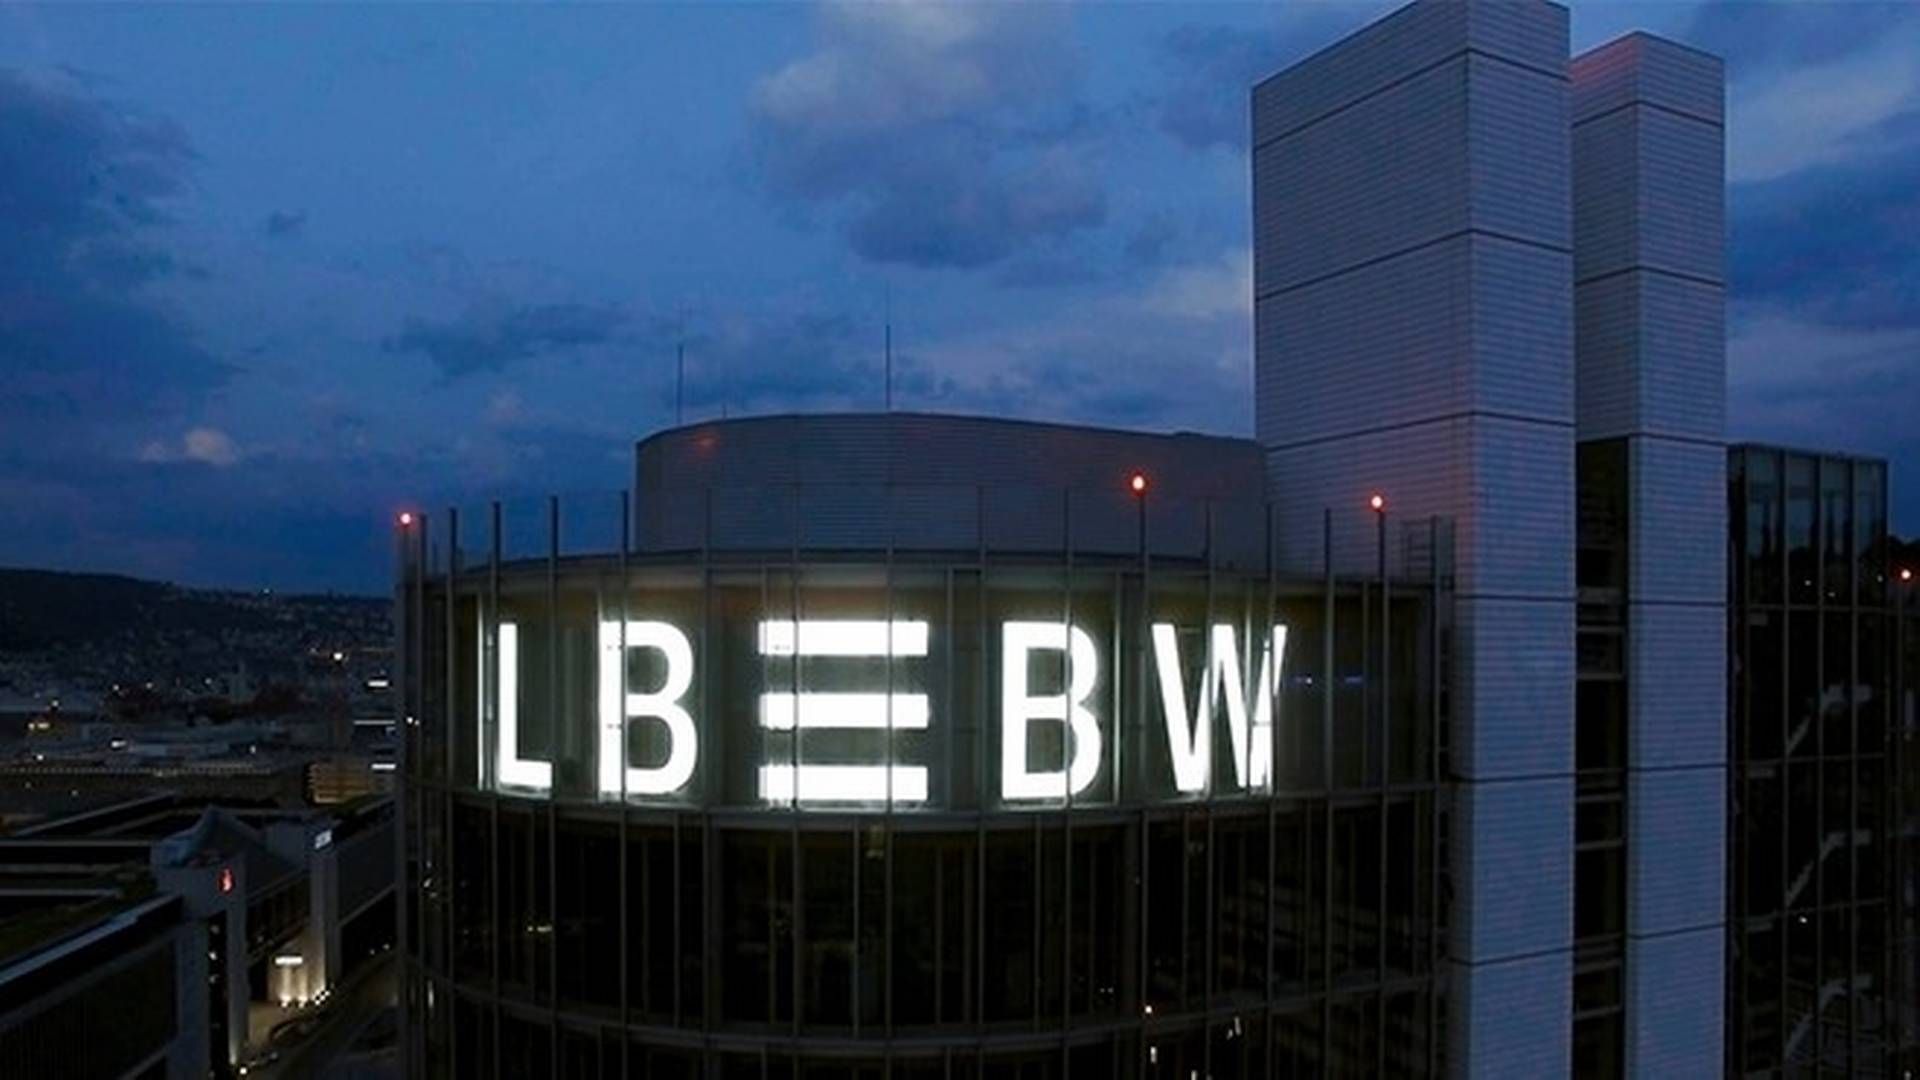 LBBW-Gebäude in der Nacht. | Foto: Landesbank Baden-Württemberg